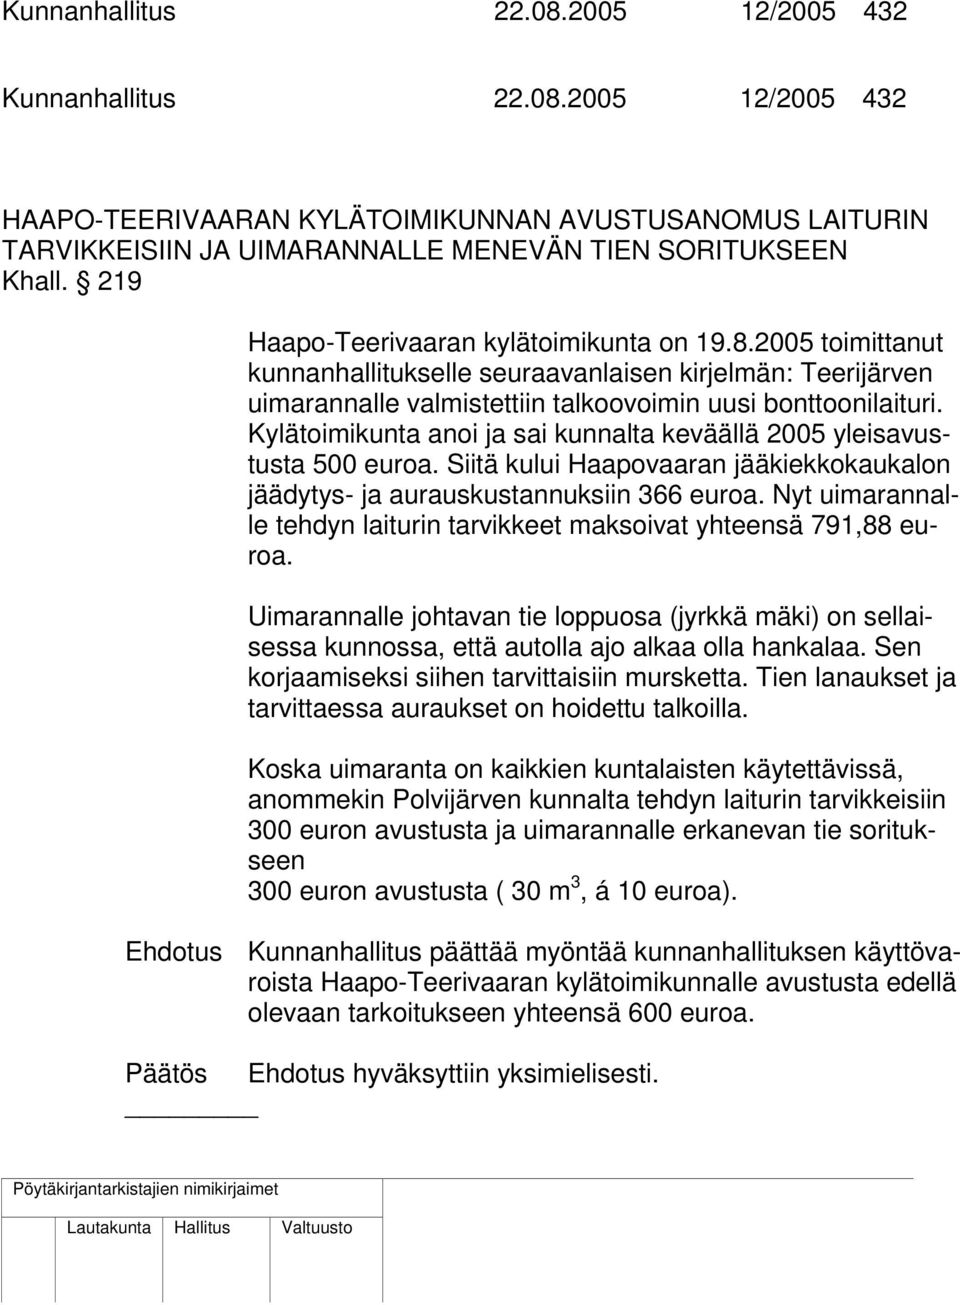 Kylätoimikunta anoi ja sai kunnalta keväällä 2005 yleisavustusta 500 euroa. Siitä kului Haapovaaran jääkiekkokaukalon jäädytys- ja aurauskustannuksiin 366 euroa.